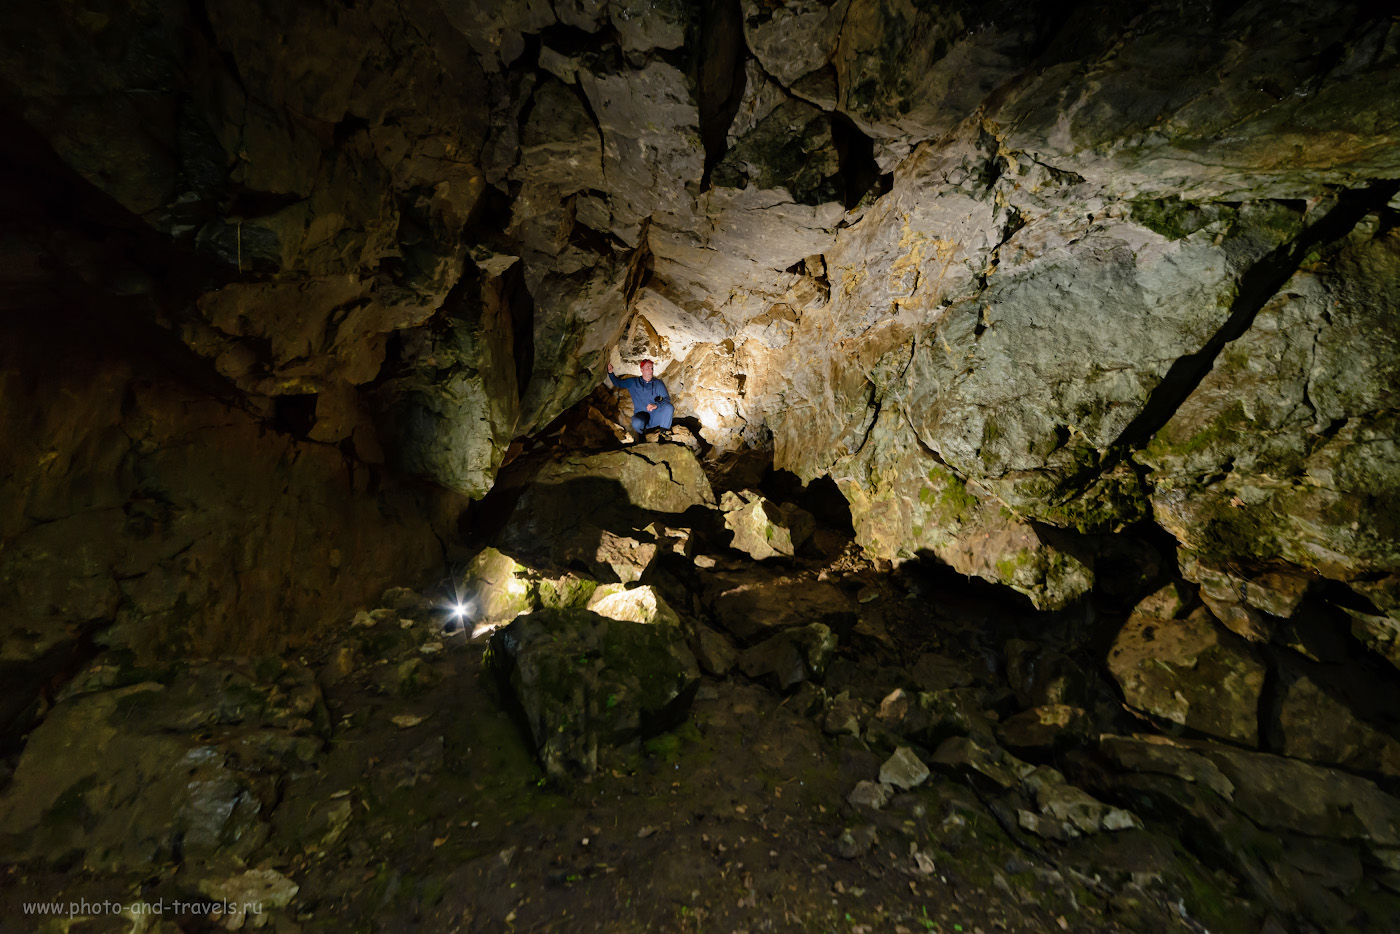 1. Фотосессия пещере Мшистая в южной части парка «Оленьи ручьи». Снято на Nikon D610 с шириком Samyang 14mm f/2.8. Настройки: В=1/30 сек., f/5.6, ISO 2000, поправка экспозиции -0.67 EV, ФР=14 мм.